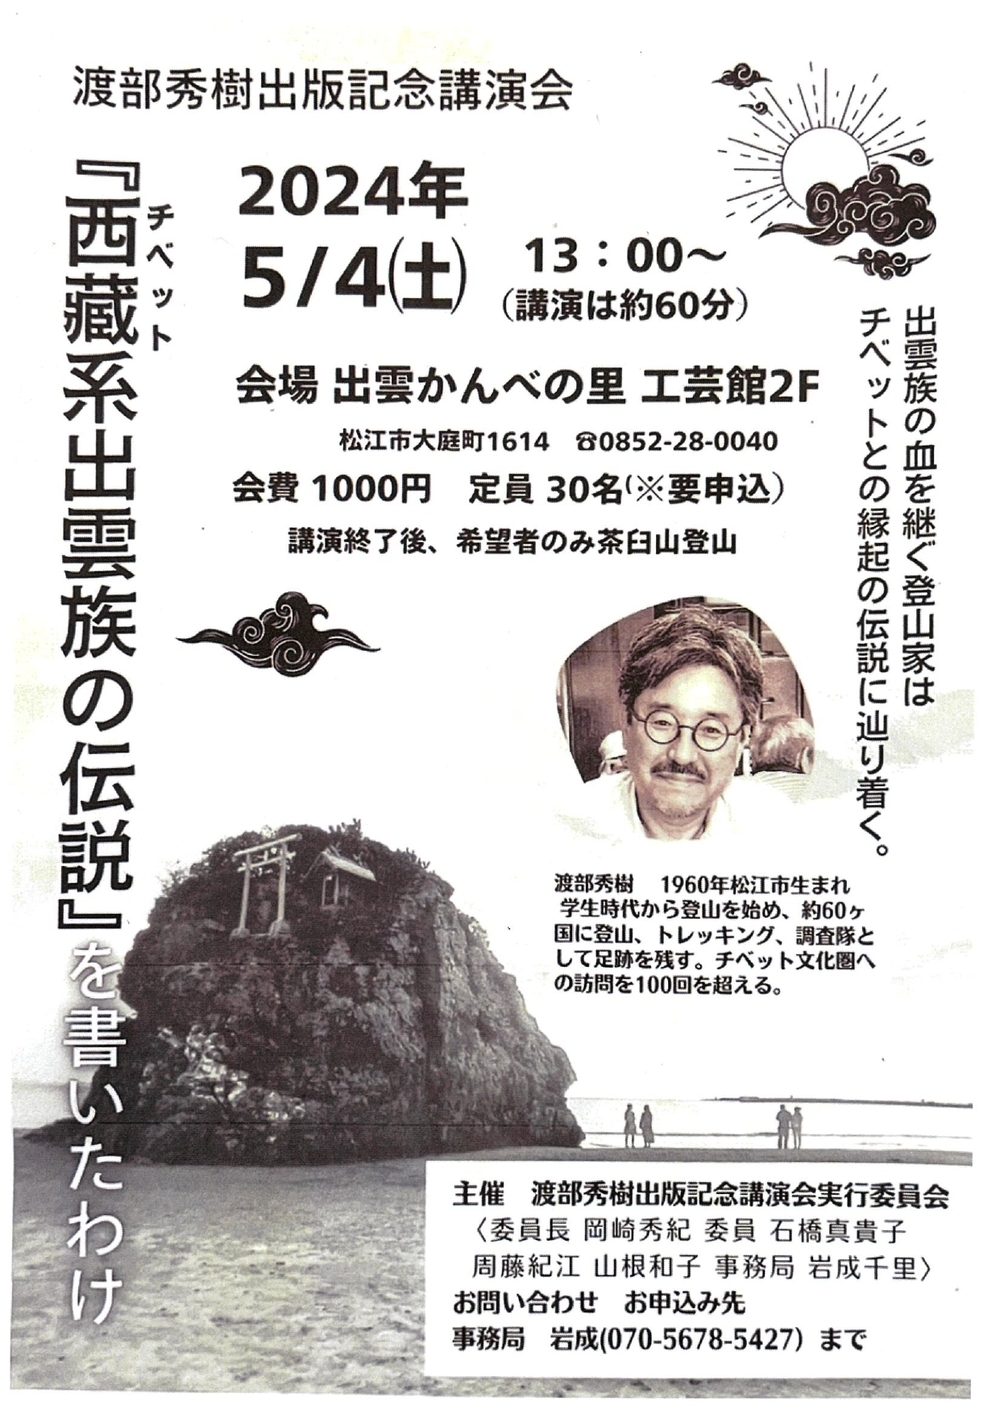 渡部秀樹出版記念講演会「『西蔵系出雲族の伝説』を書いたわけ」